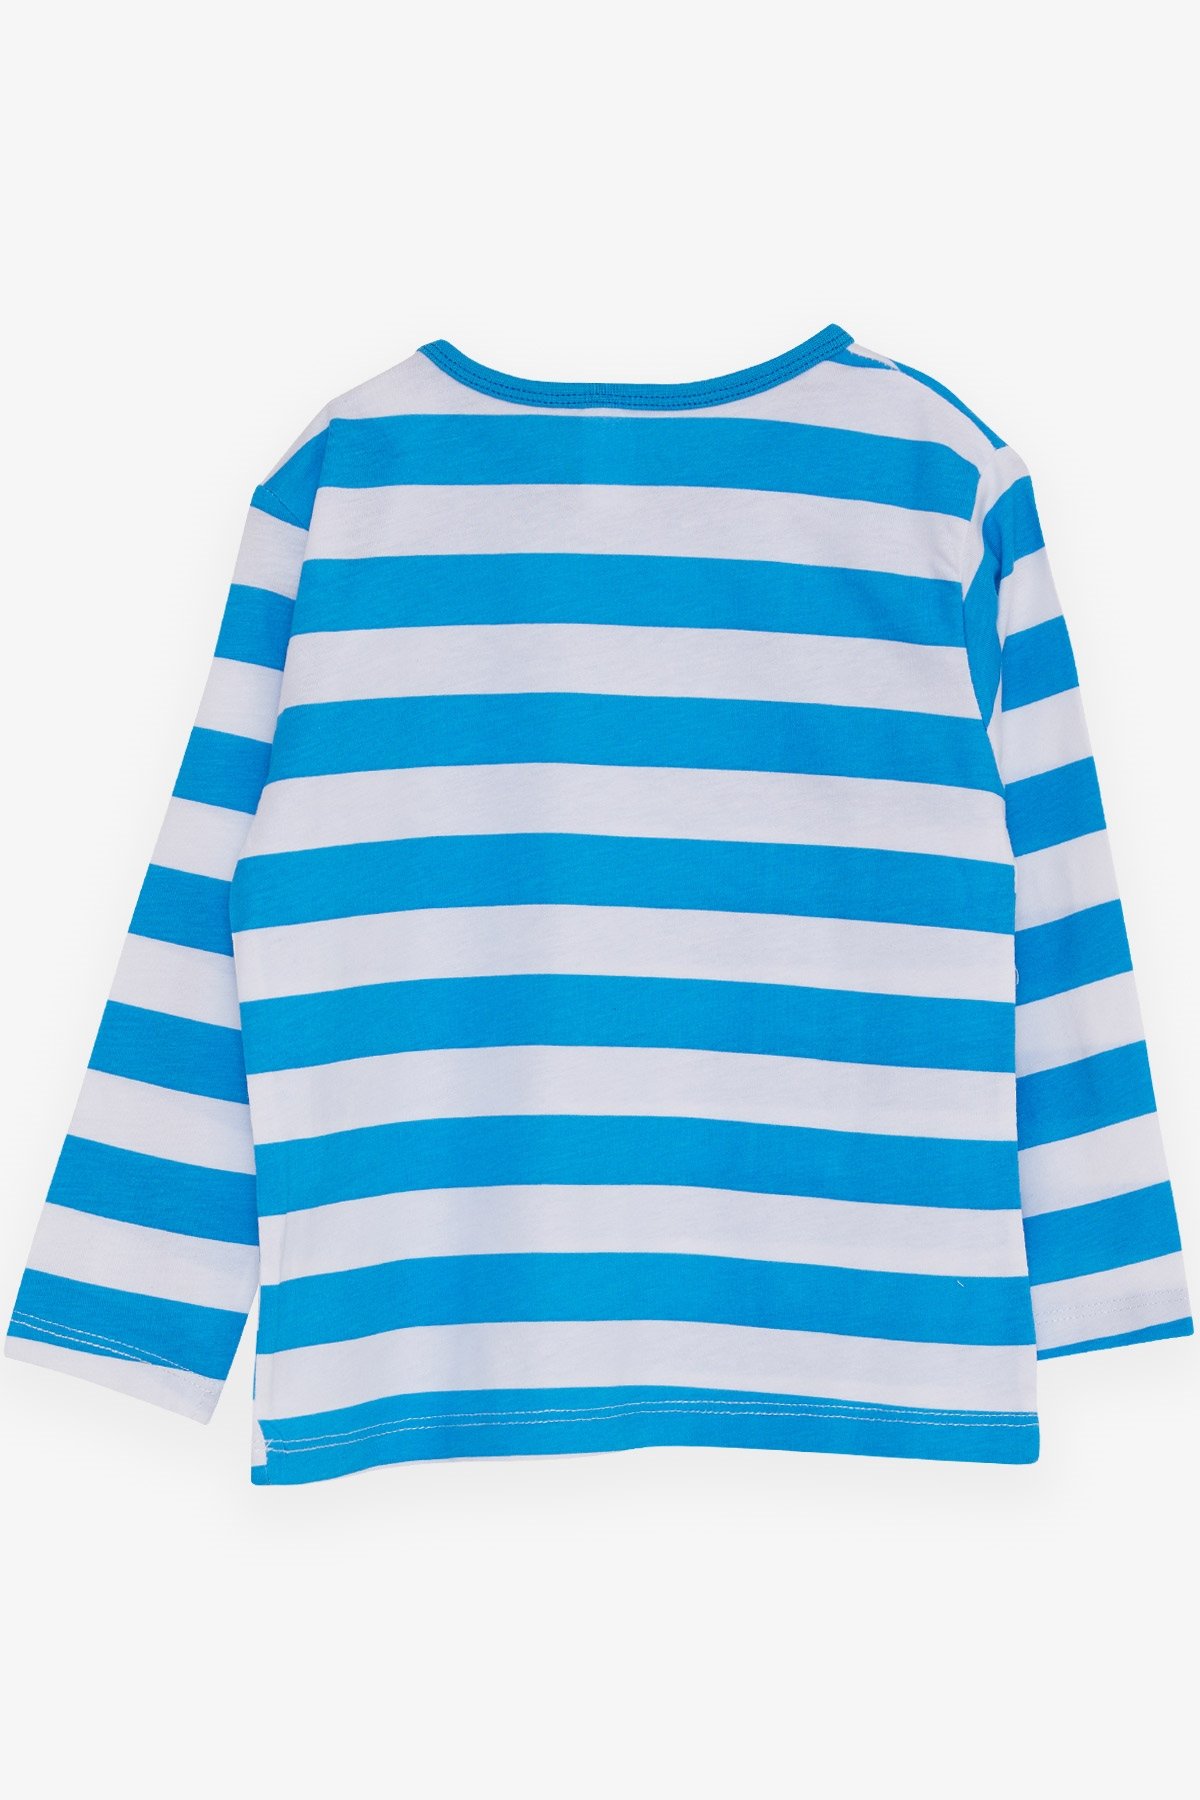 Erkek Bebek Uzun Kollu Tişört Çizgili Açık Mavi 9 Ay-1 Yaş - Baharlık Bebek  Uzun Kollular | Breeze